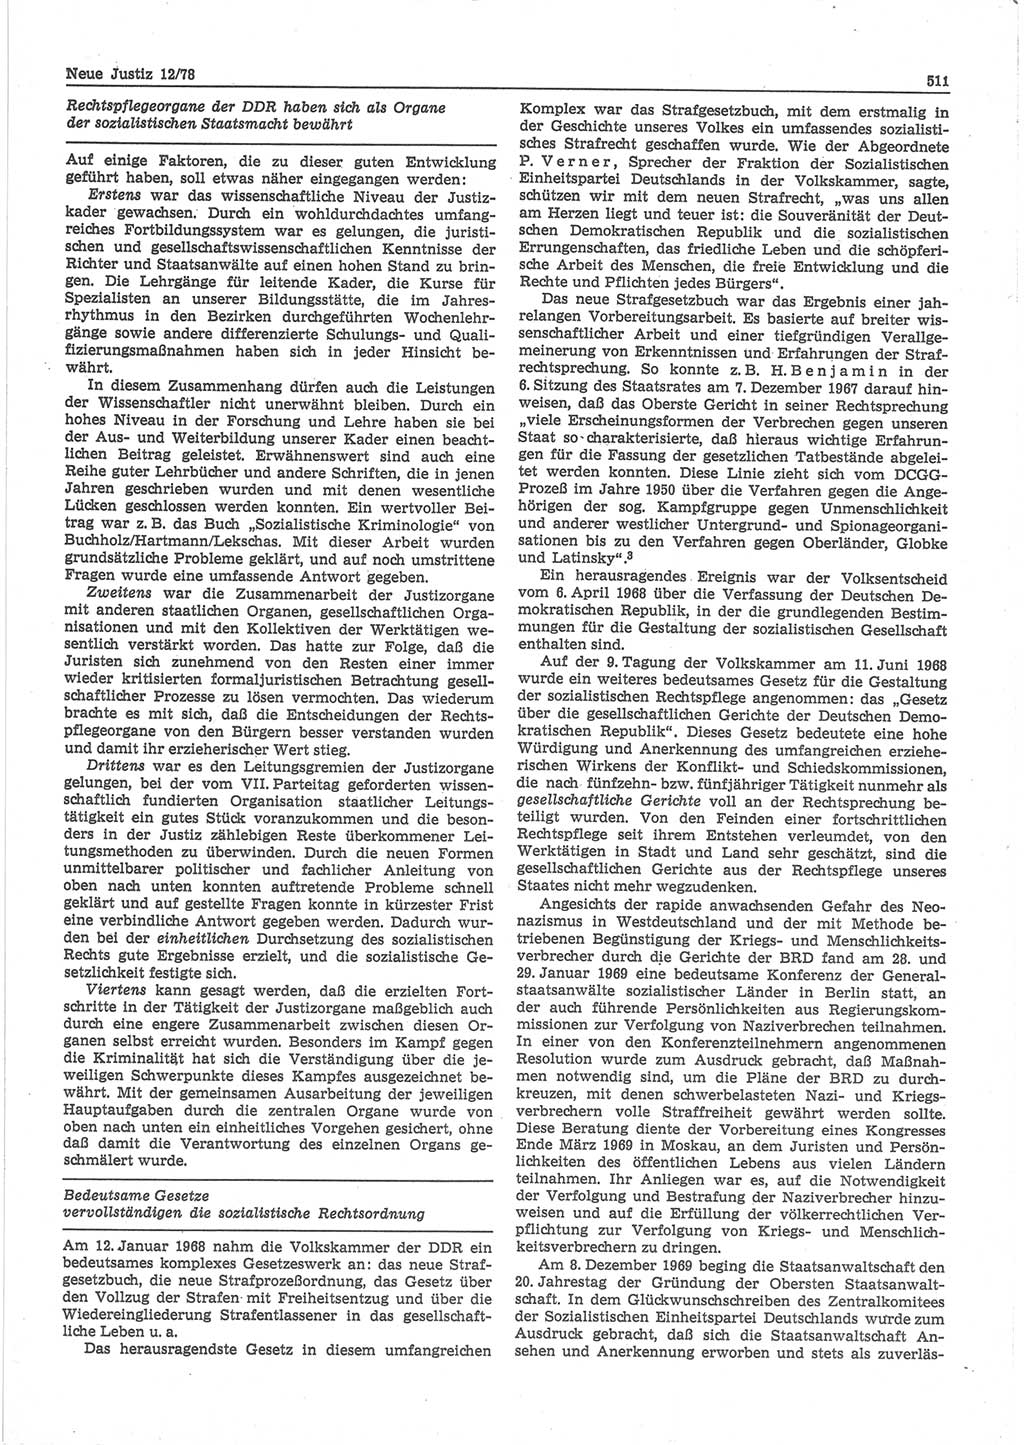 Neue Justiz (NJ), Zeitschrift für sozialistisches Recht und Gesetzlichkeit [Deutsche Demokratische Republik (DDR)], 32. Jahrgang 1978, Seite 511 (NJ DDR 1978, S. 511)